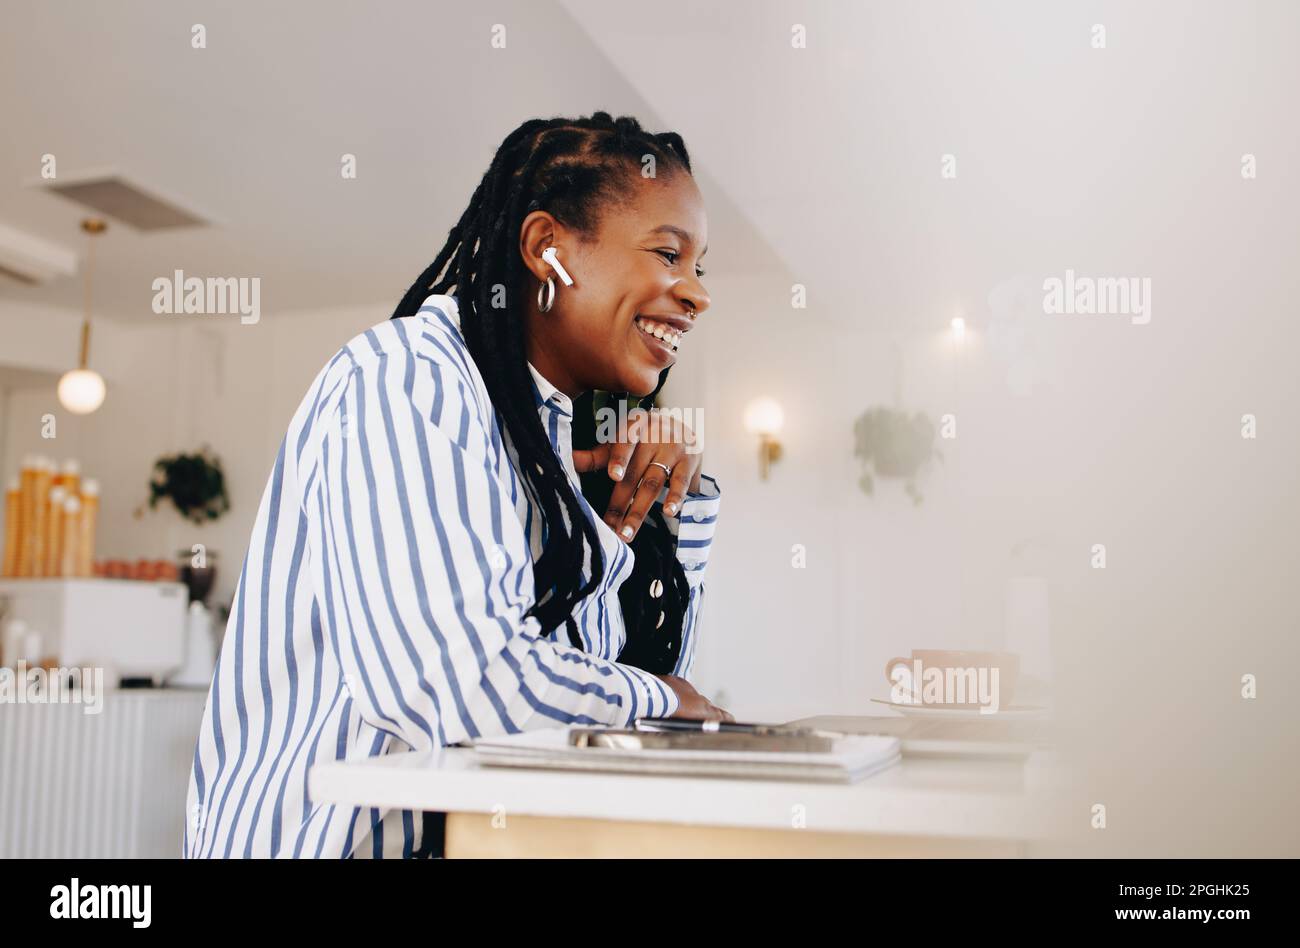 Glückliche junge Geschäftsfrau, die an einem Online-Meeting teilnimmt, während sie in einem Café arbeitet. Lächelnde junge Geschäftsfrau, die ein Gespräch mit einem Kunden führt Stockfoto